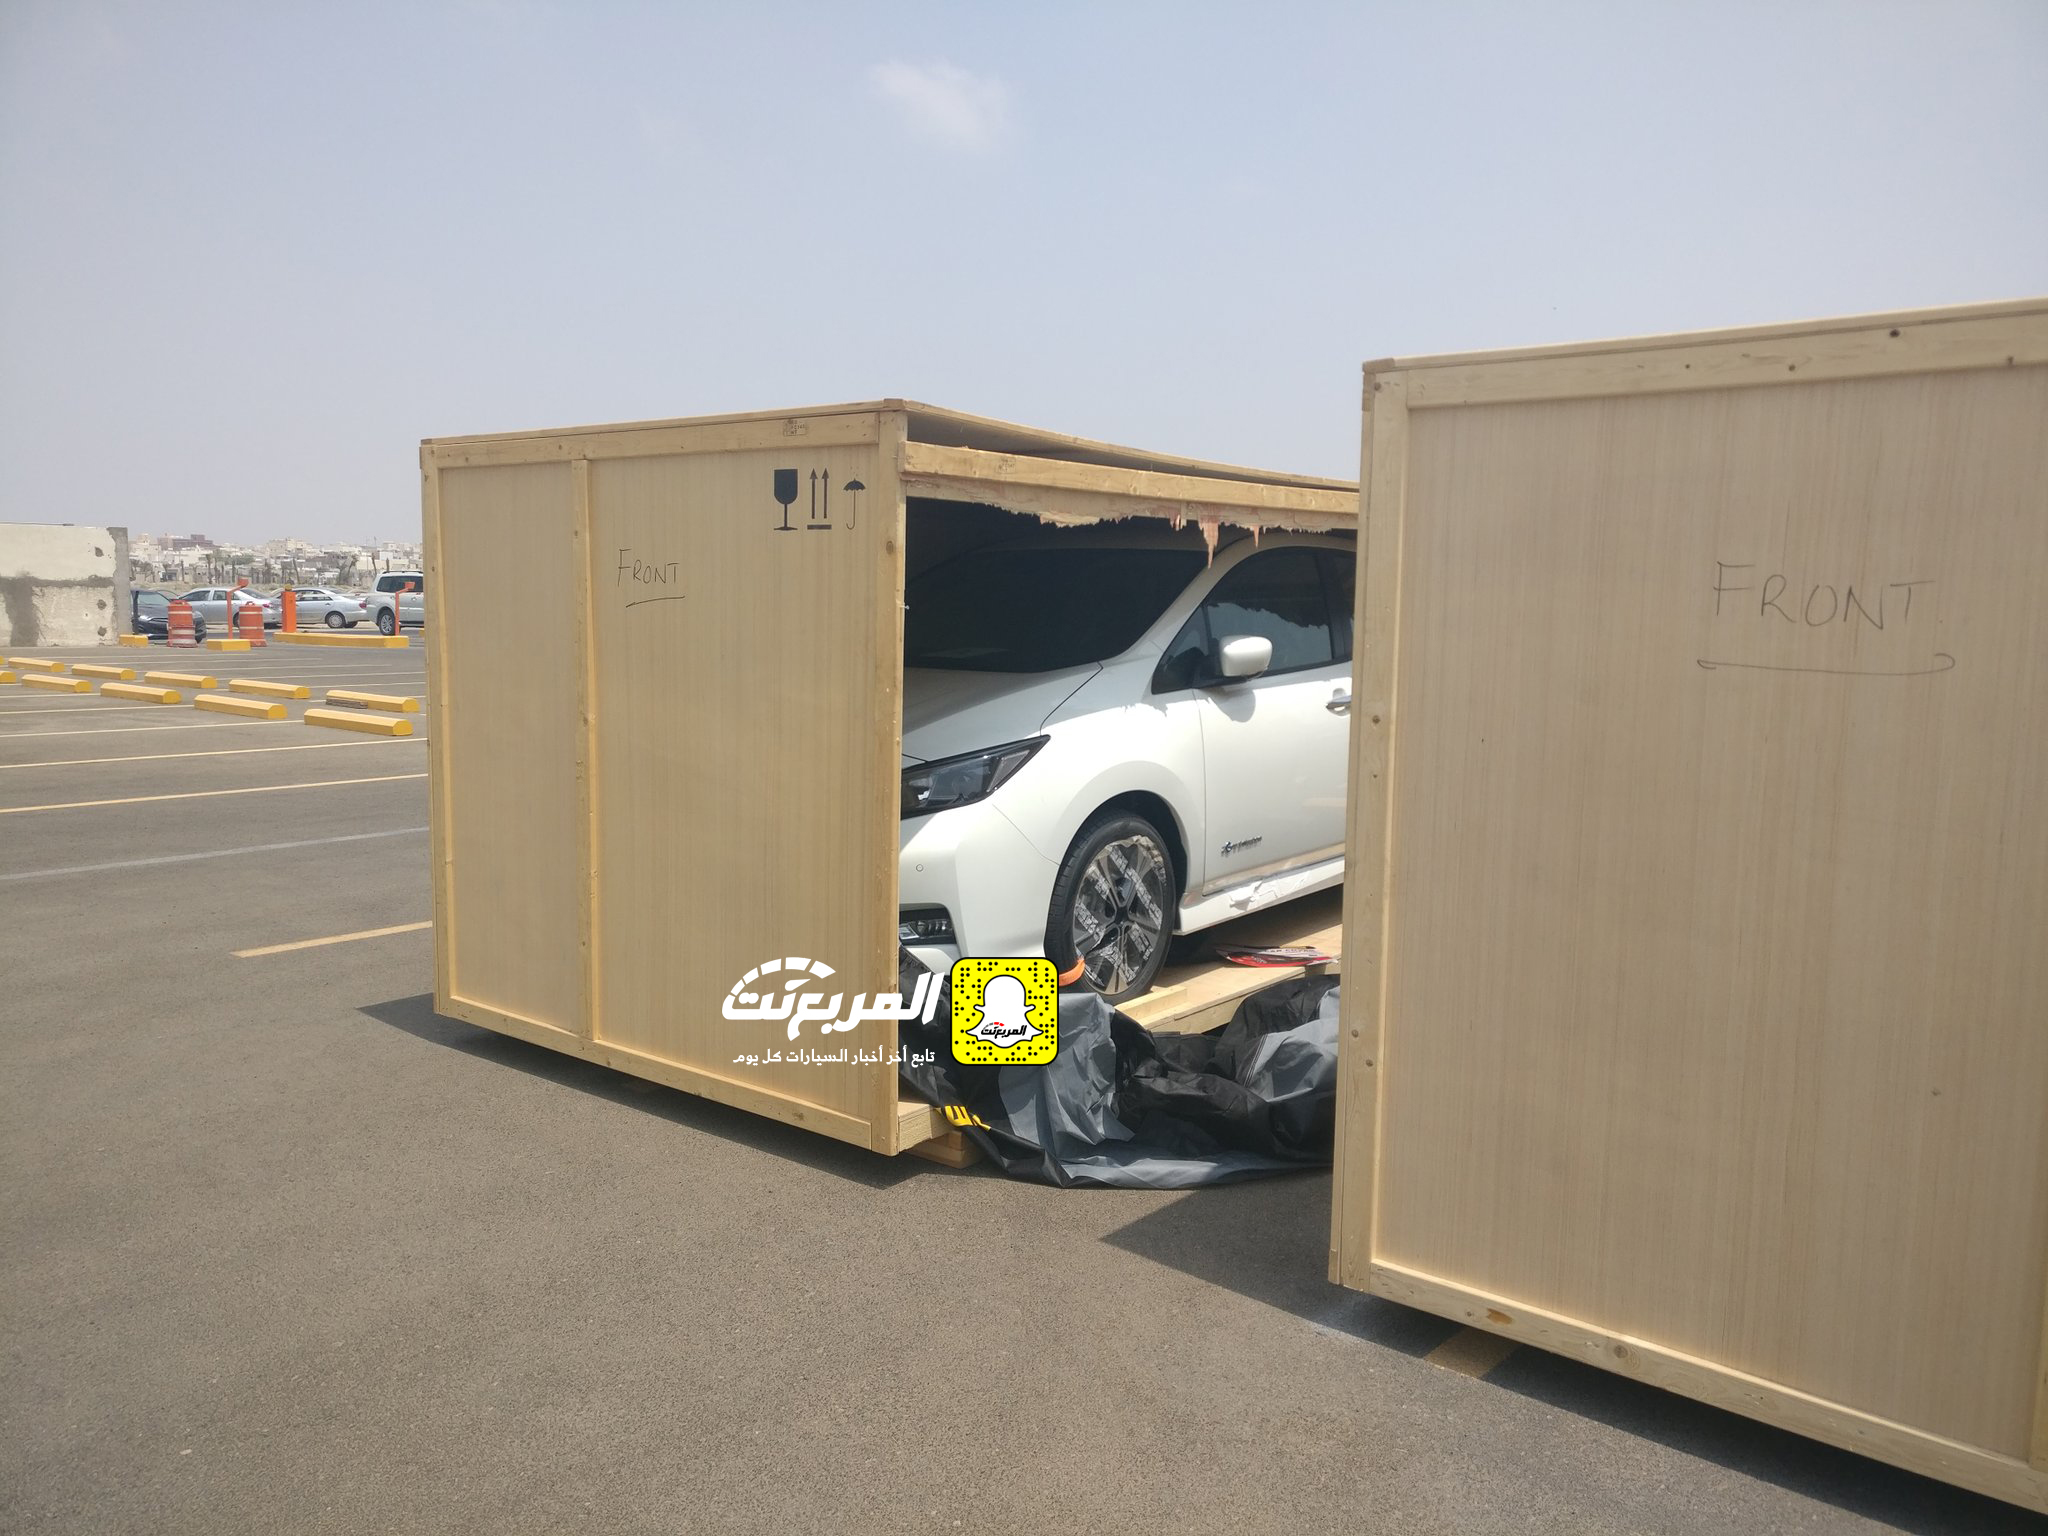 "بالصور" وصول سيارات نيسان ليف الكهربائية الى السعودية لإجراء اختبارات عليها 2